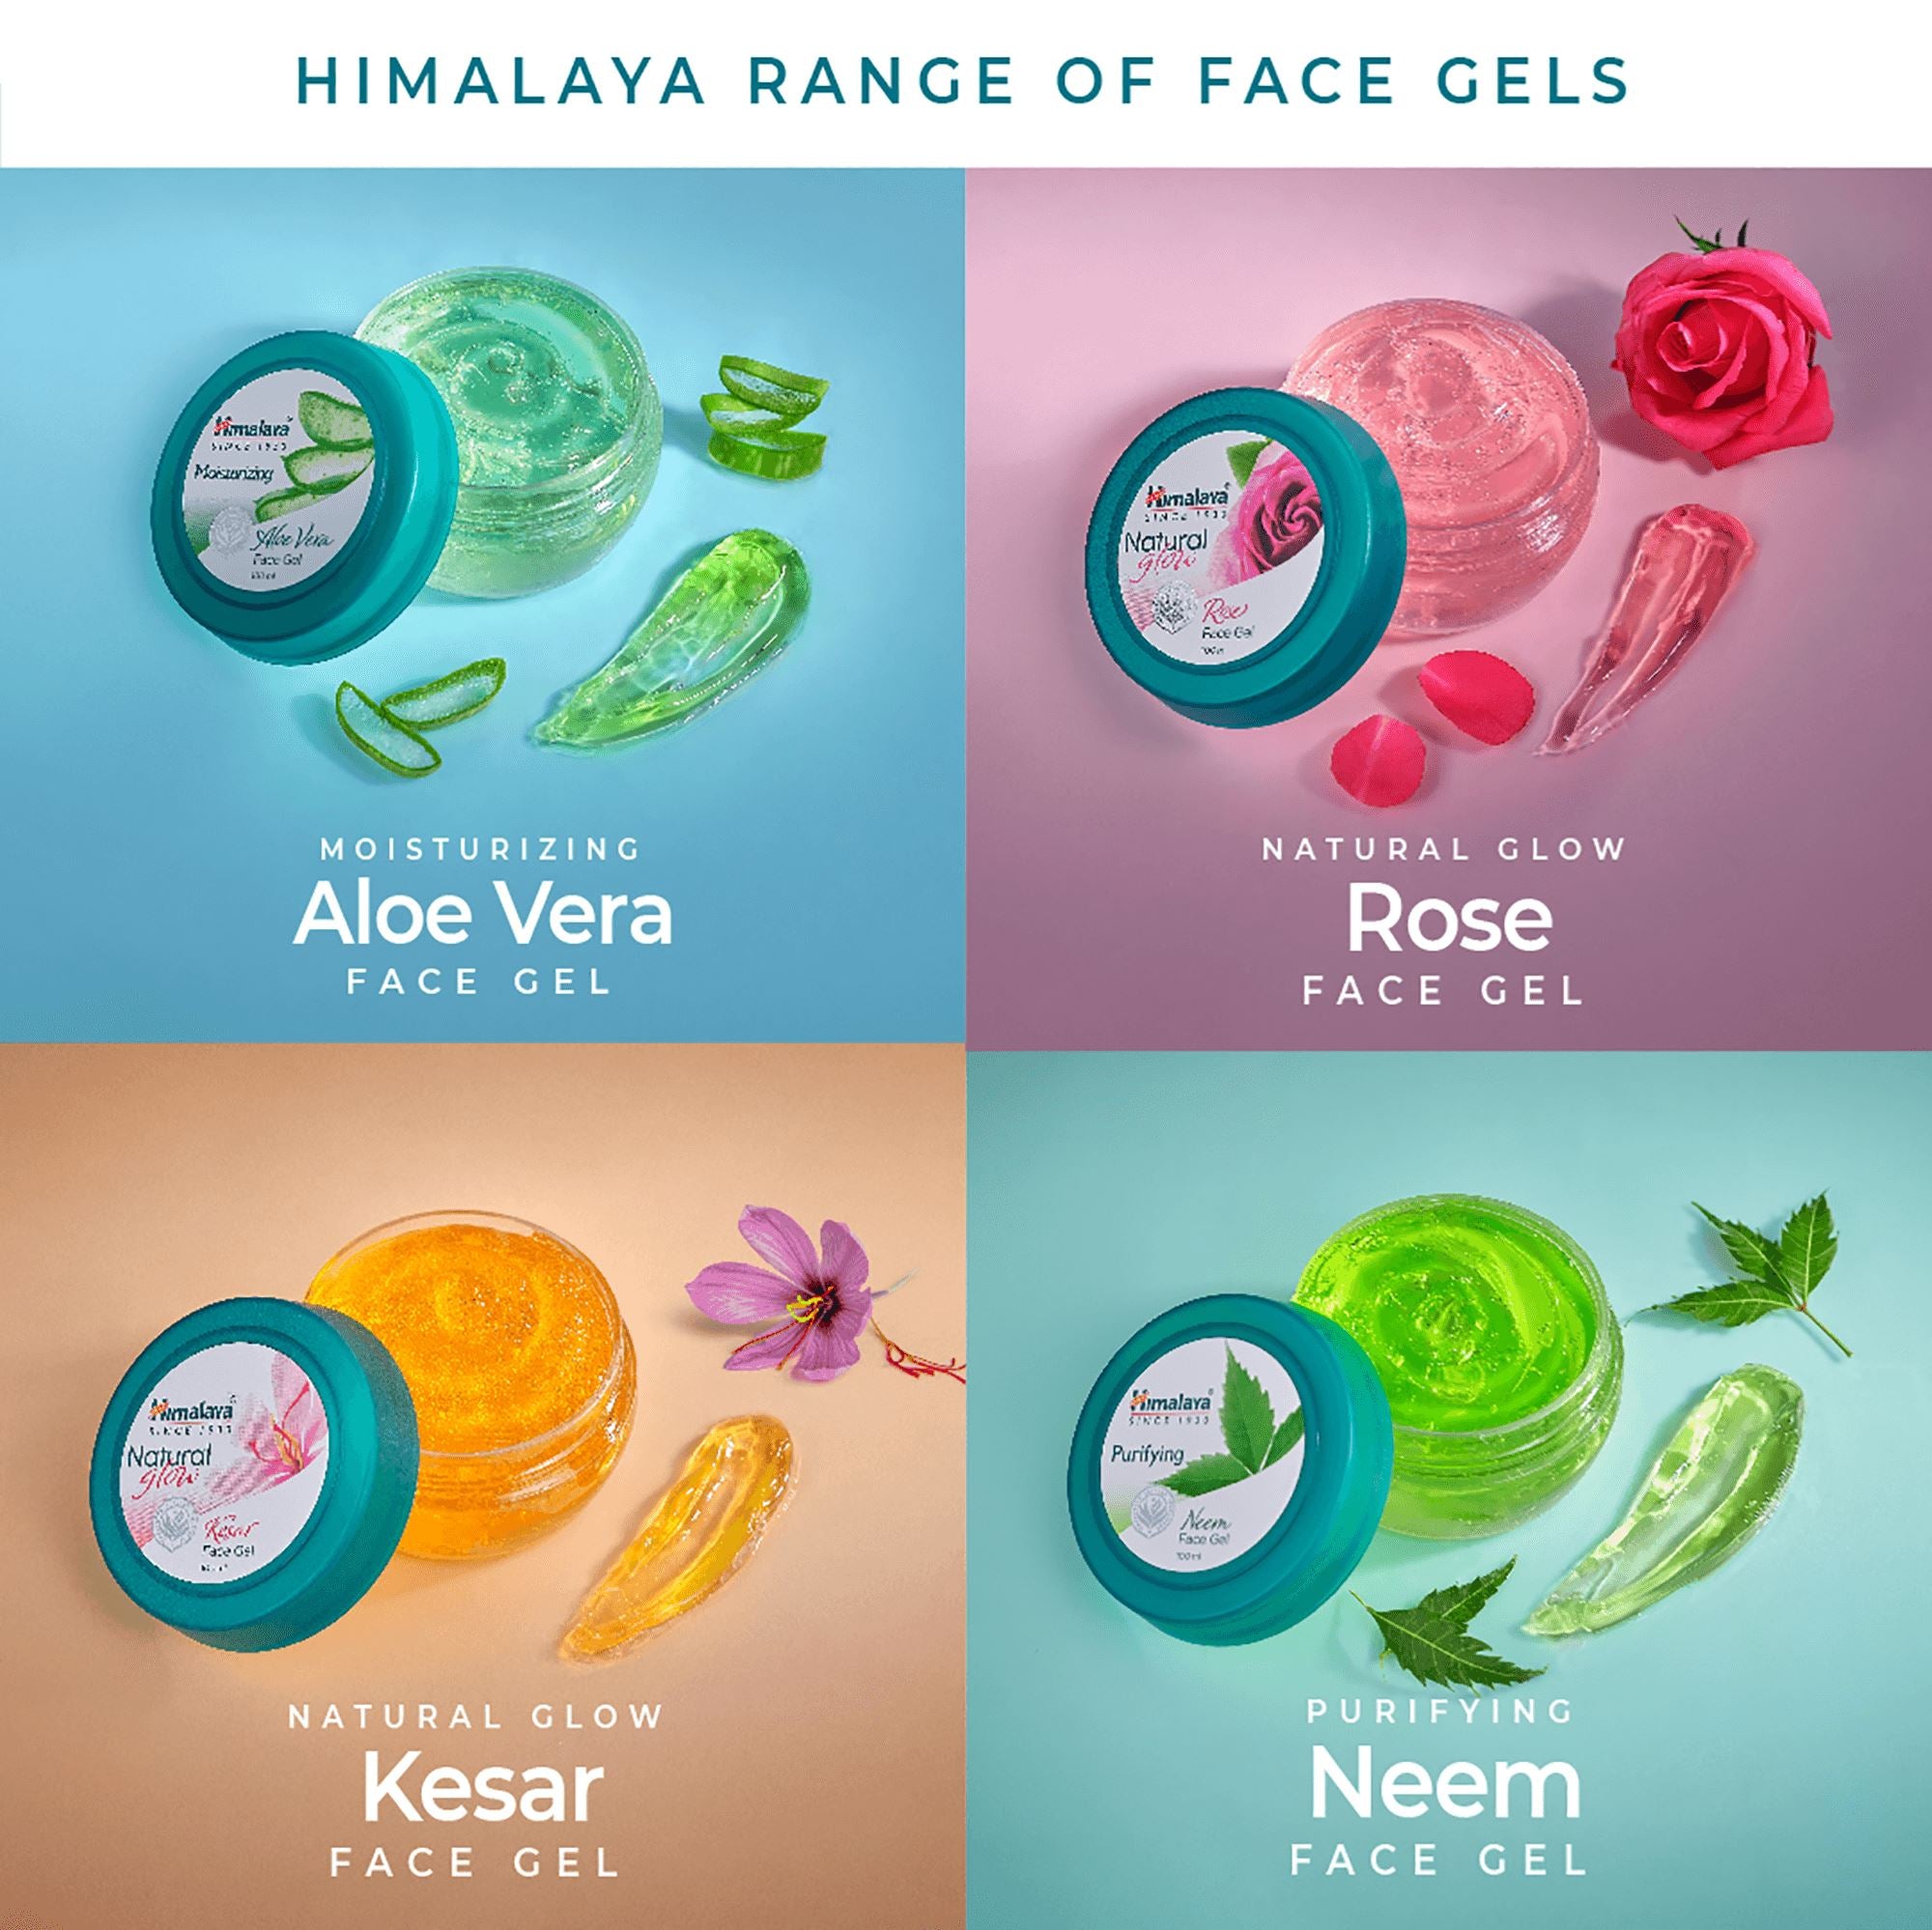 Himalaya Face Gel Range - Aloe Vera, Rose, Kesar, and Neem